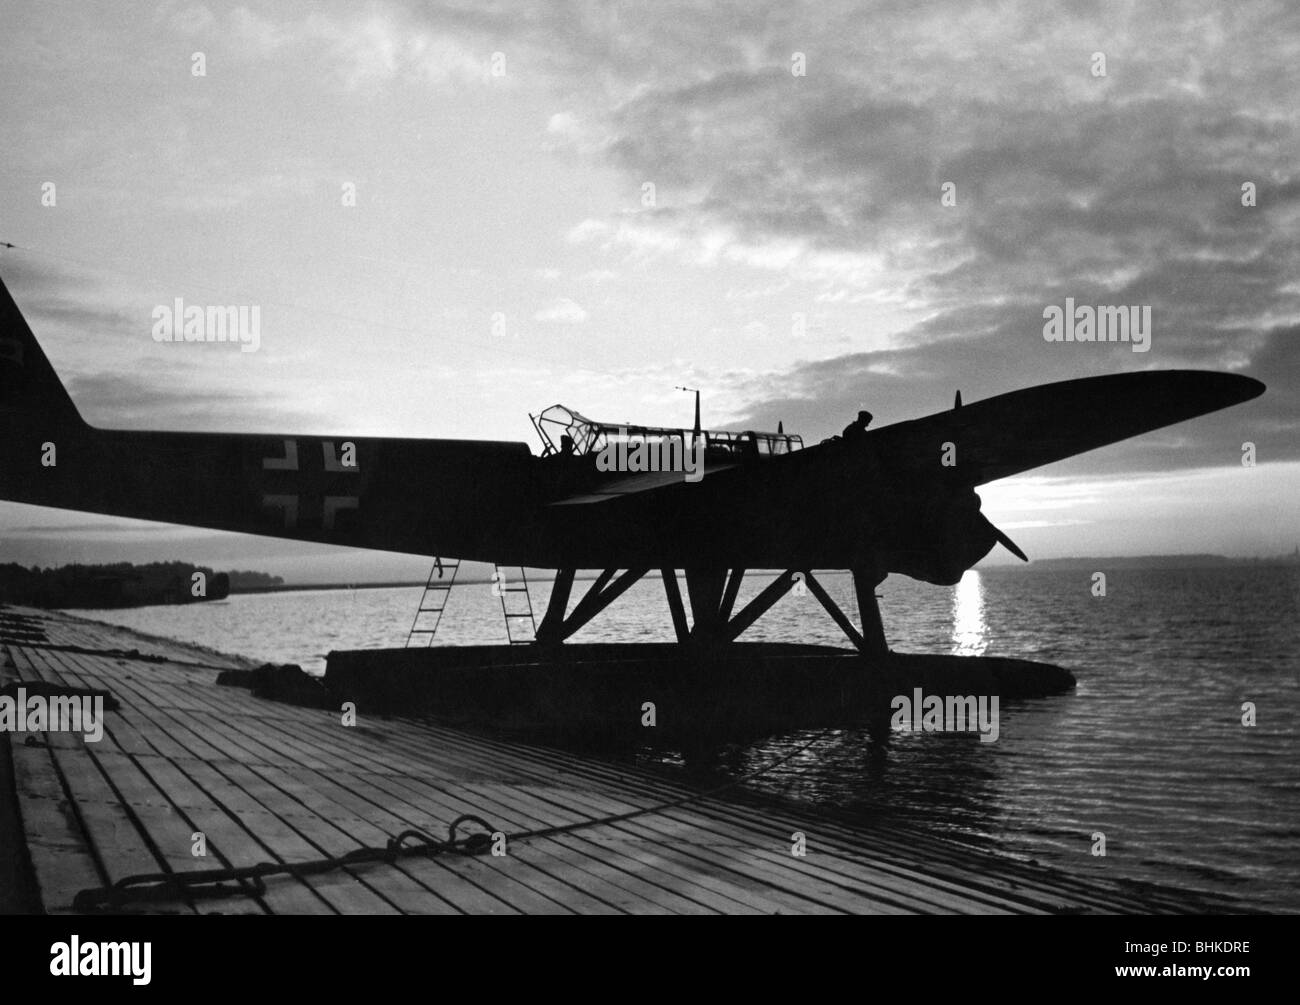 Ereignisse, Zweiter Weltkrieg/Zweiter Weltkrieg, Luftkrieg, Flugzeug, deutsches Wasserflugzeug Heinkel He 115 wird auf eine Mission vorbereitet, ca. 1940, Stockfoto